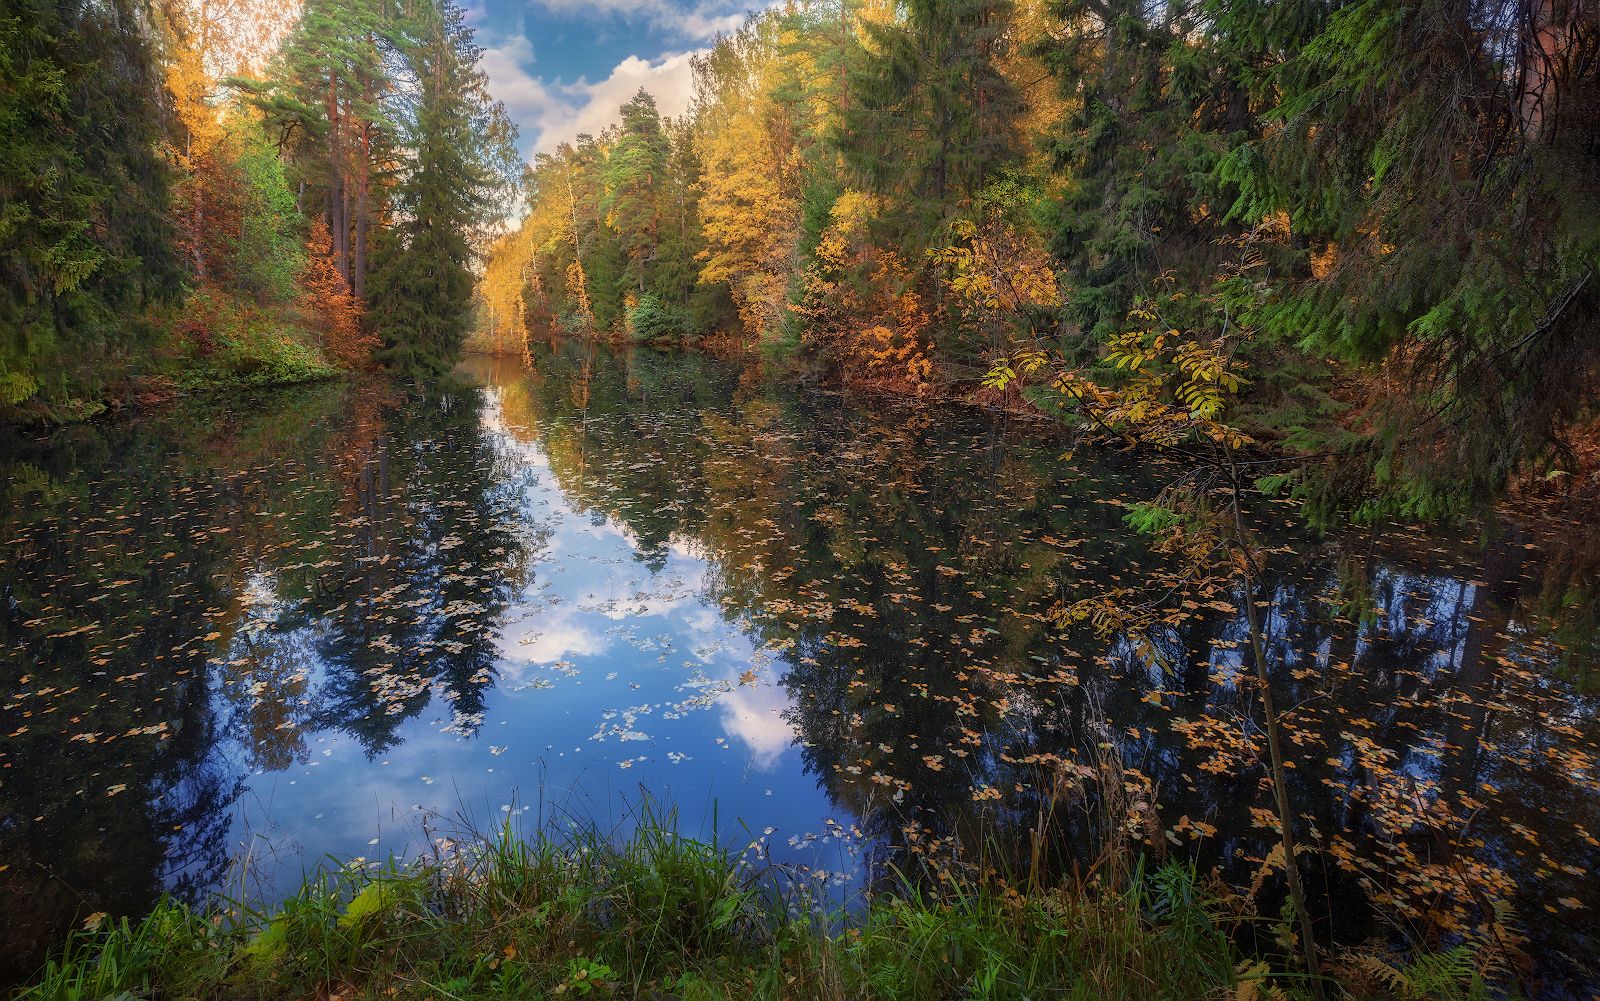 осень октябрь вечер листопад река деревья отражение, Скороходов Константин